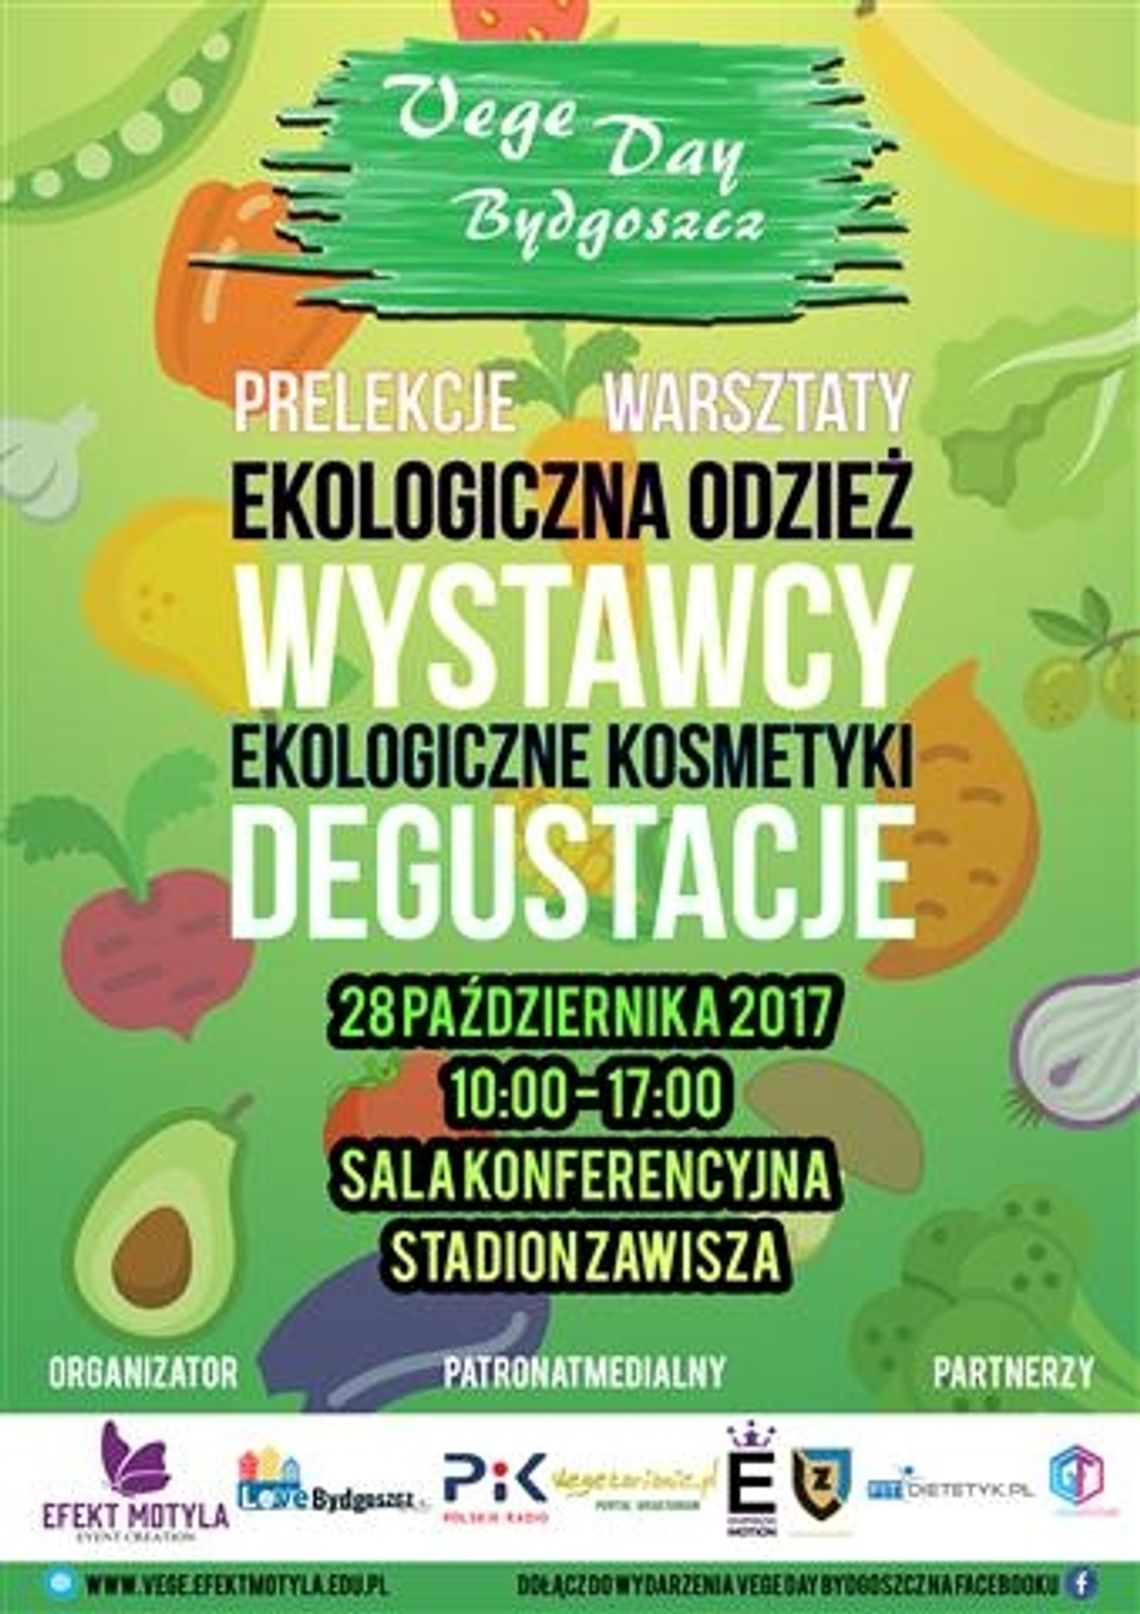 Vege Day Bydgoszcz